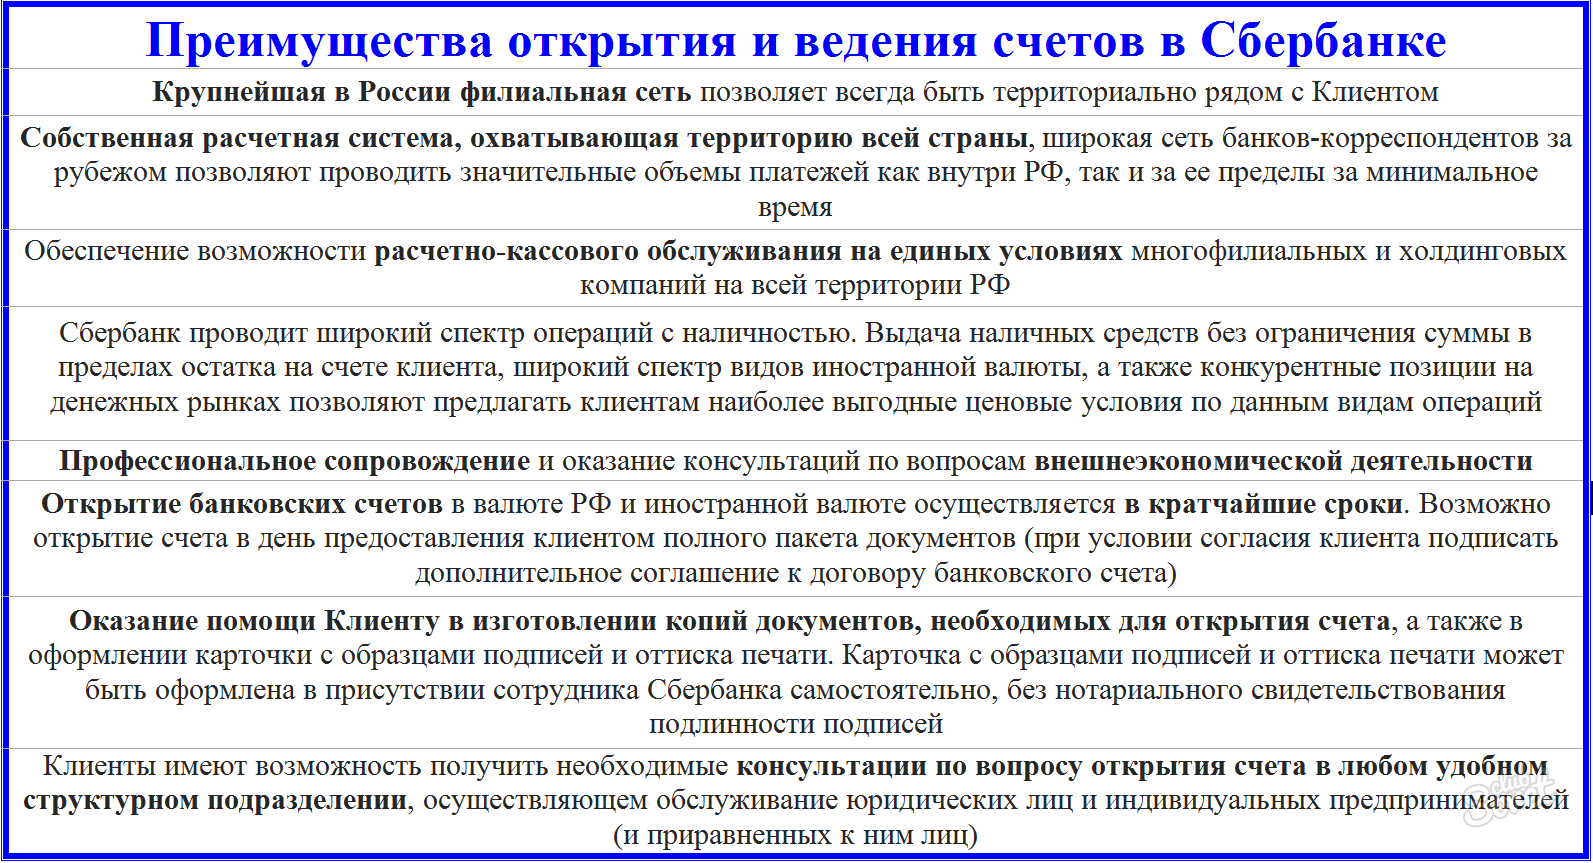 مزایای خدمات در Sberbank